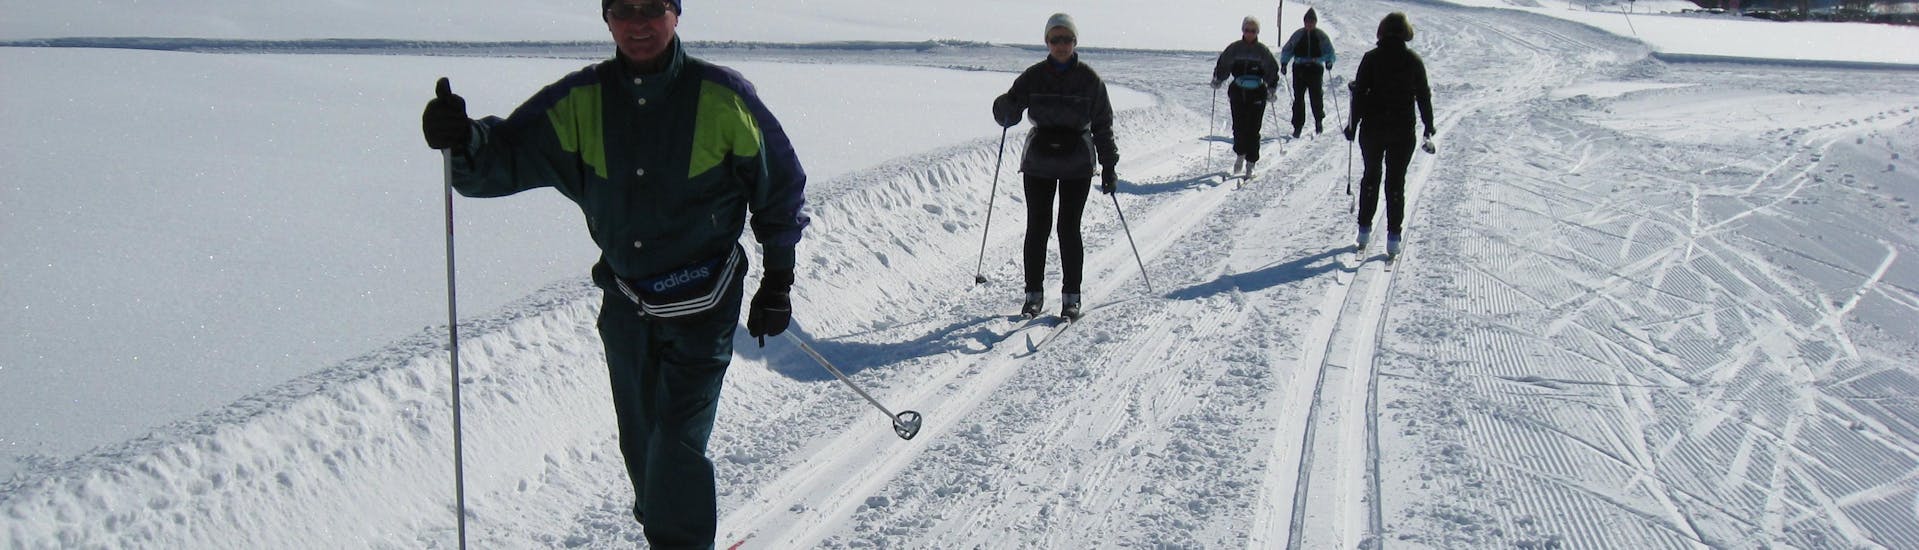 Lezioni private di sci di fondo per tutti i livelli con Ski & Snowboard School Ostrachtal.